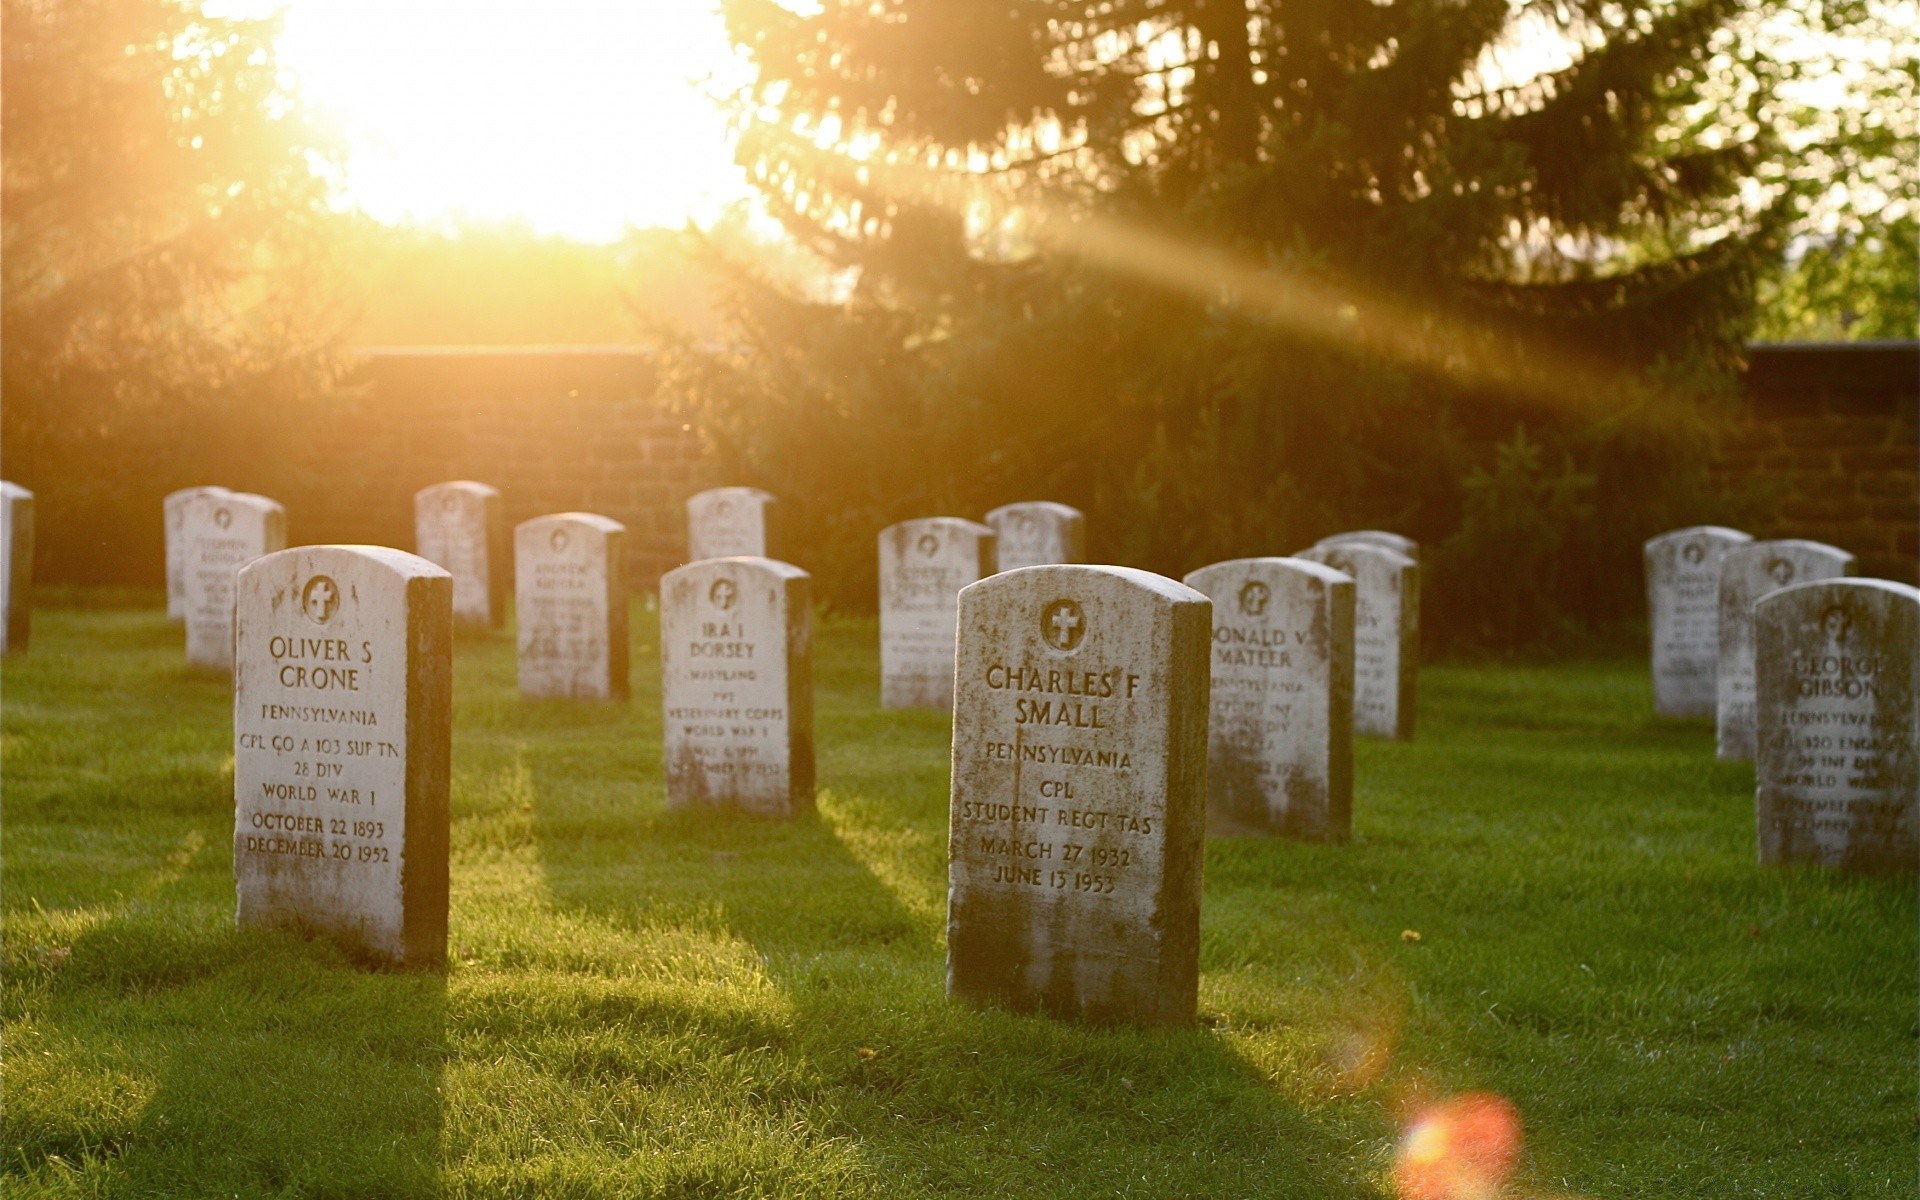 хэллоуин кладбище могила надгробие на открытом воздухе захоронения войны кладбище трава памяти похороны жертва солнце путешествия религия военные